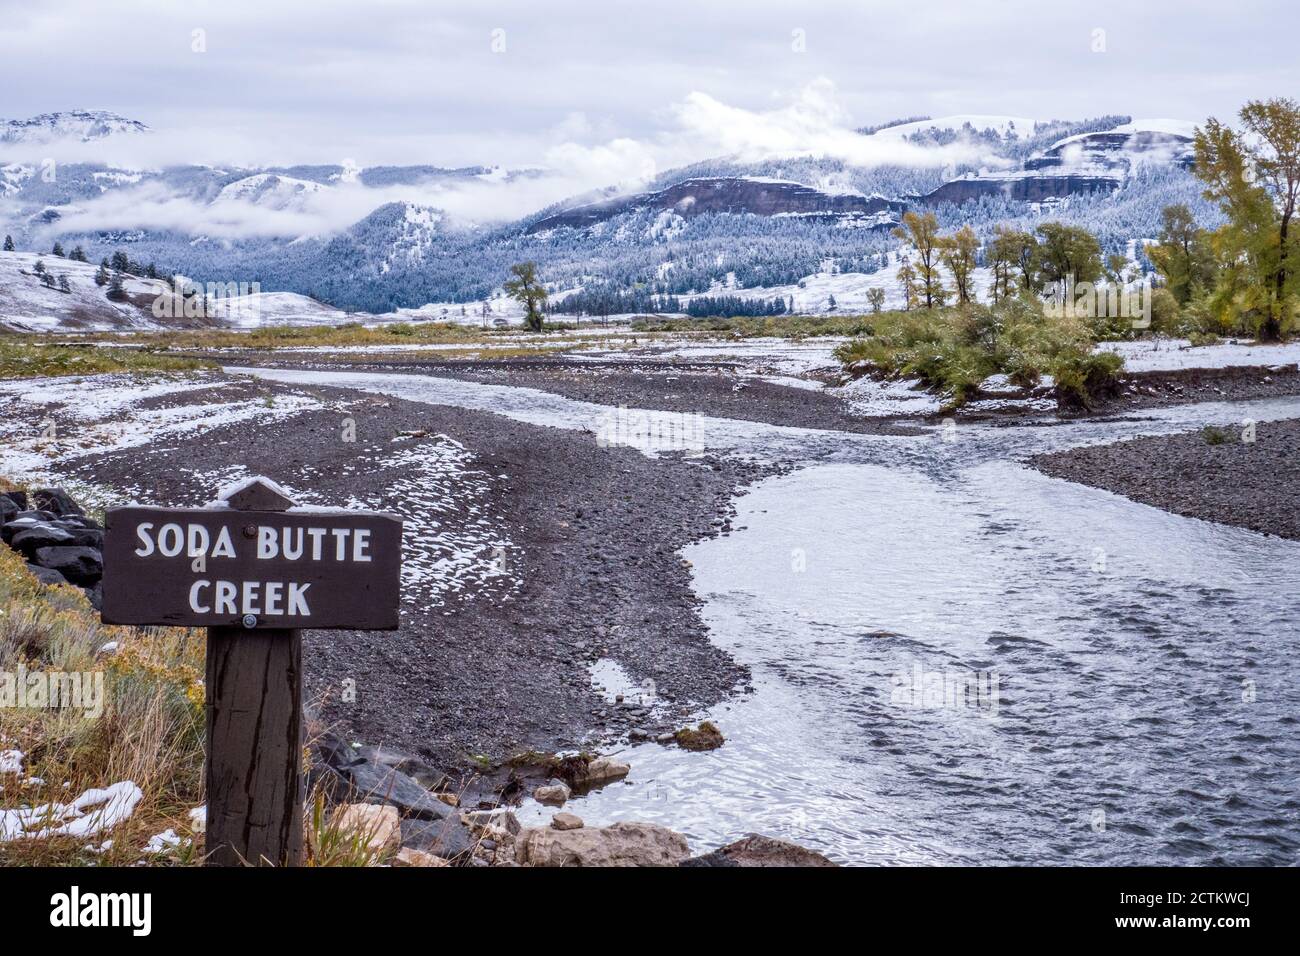 Parc national de Yellowstone, Wyoming, États-Unis. Soda Butte Creek avec panneau, dans la vallée de Lamar au début de l'automne. Banque D'Images